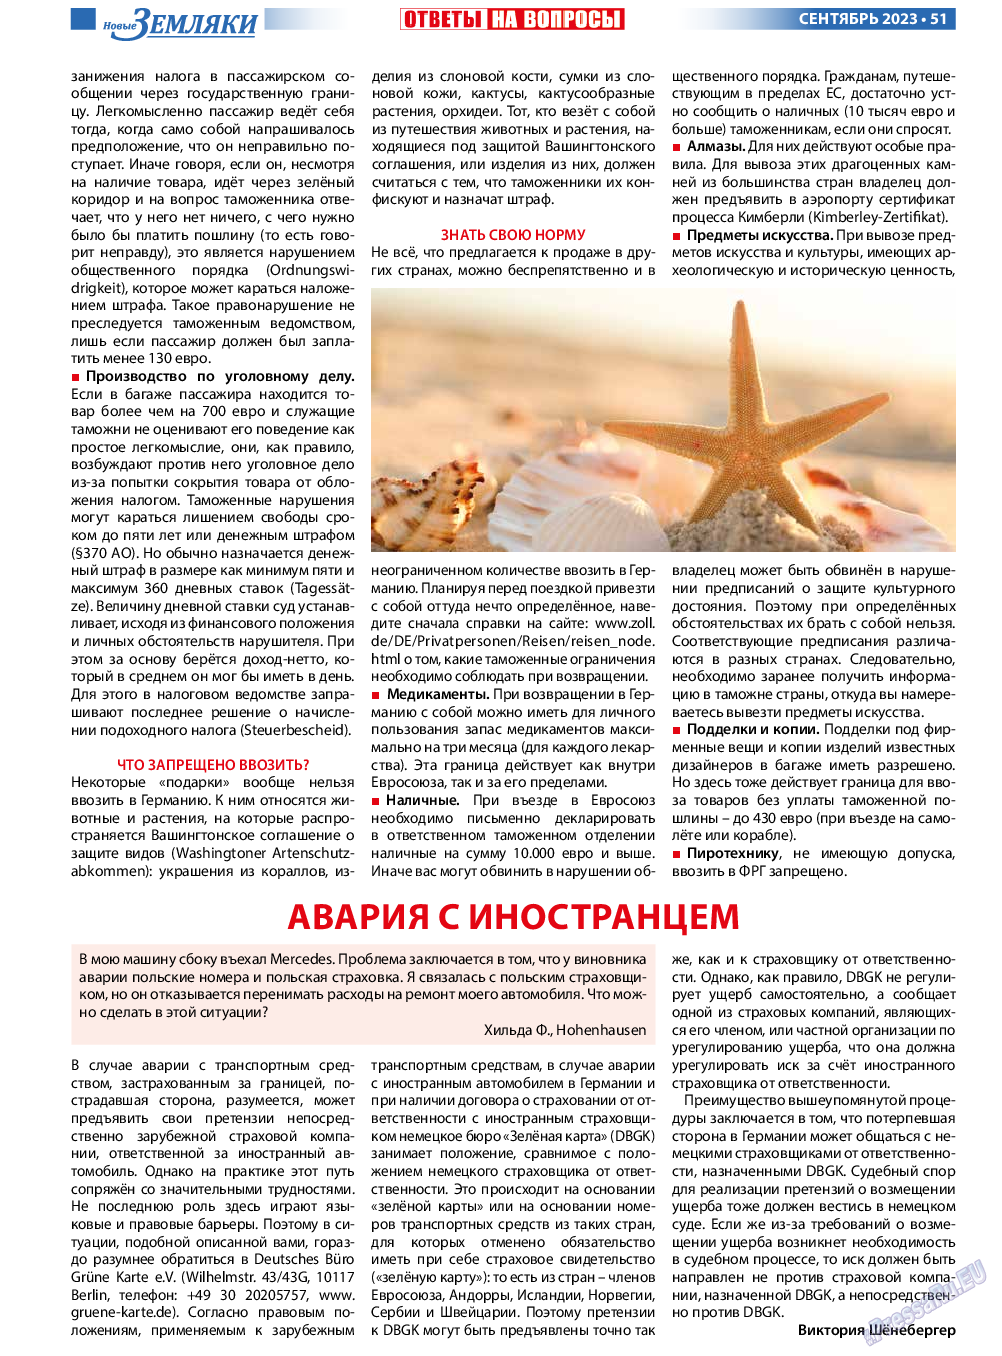 Новые Земляки, газета. 2023 №9 стр.51